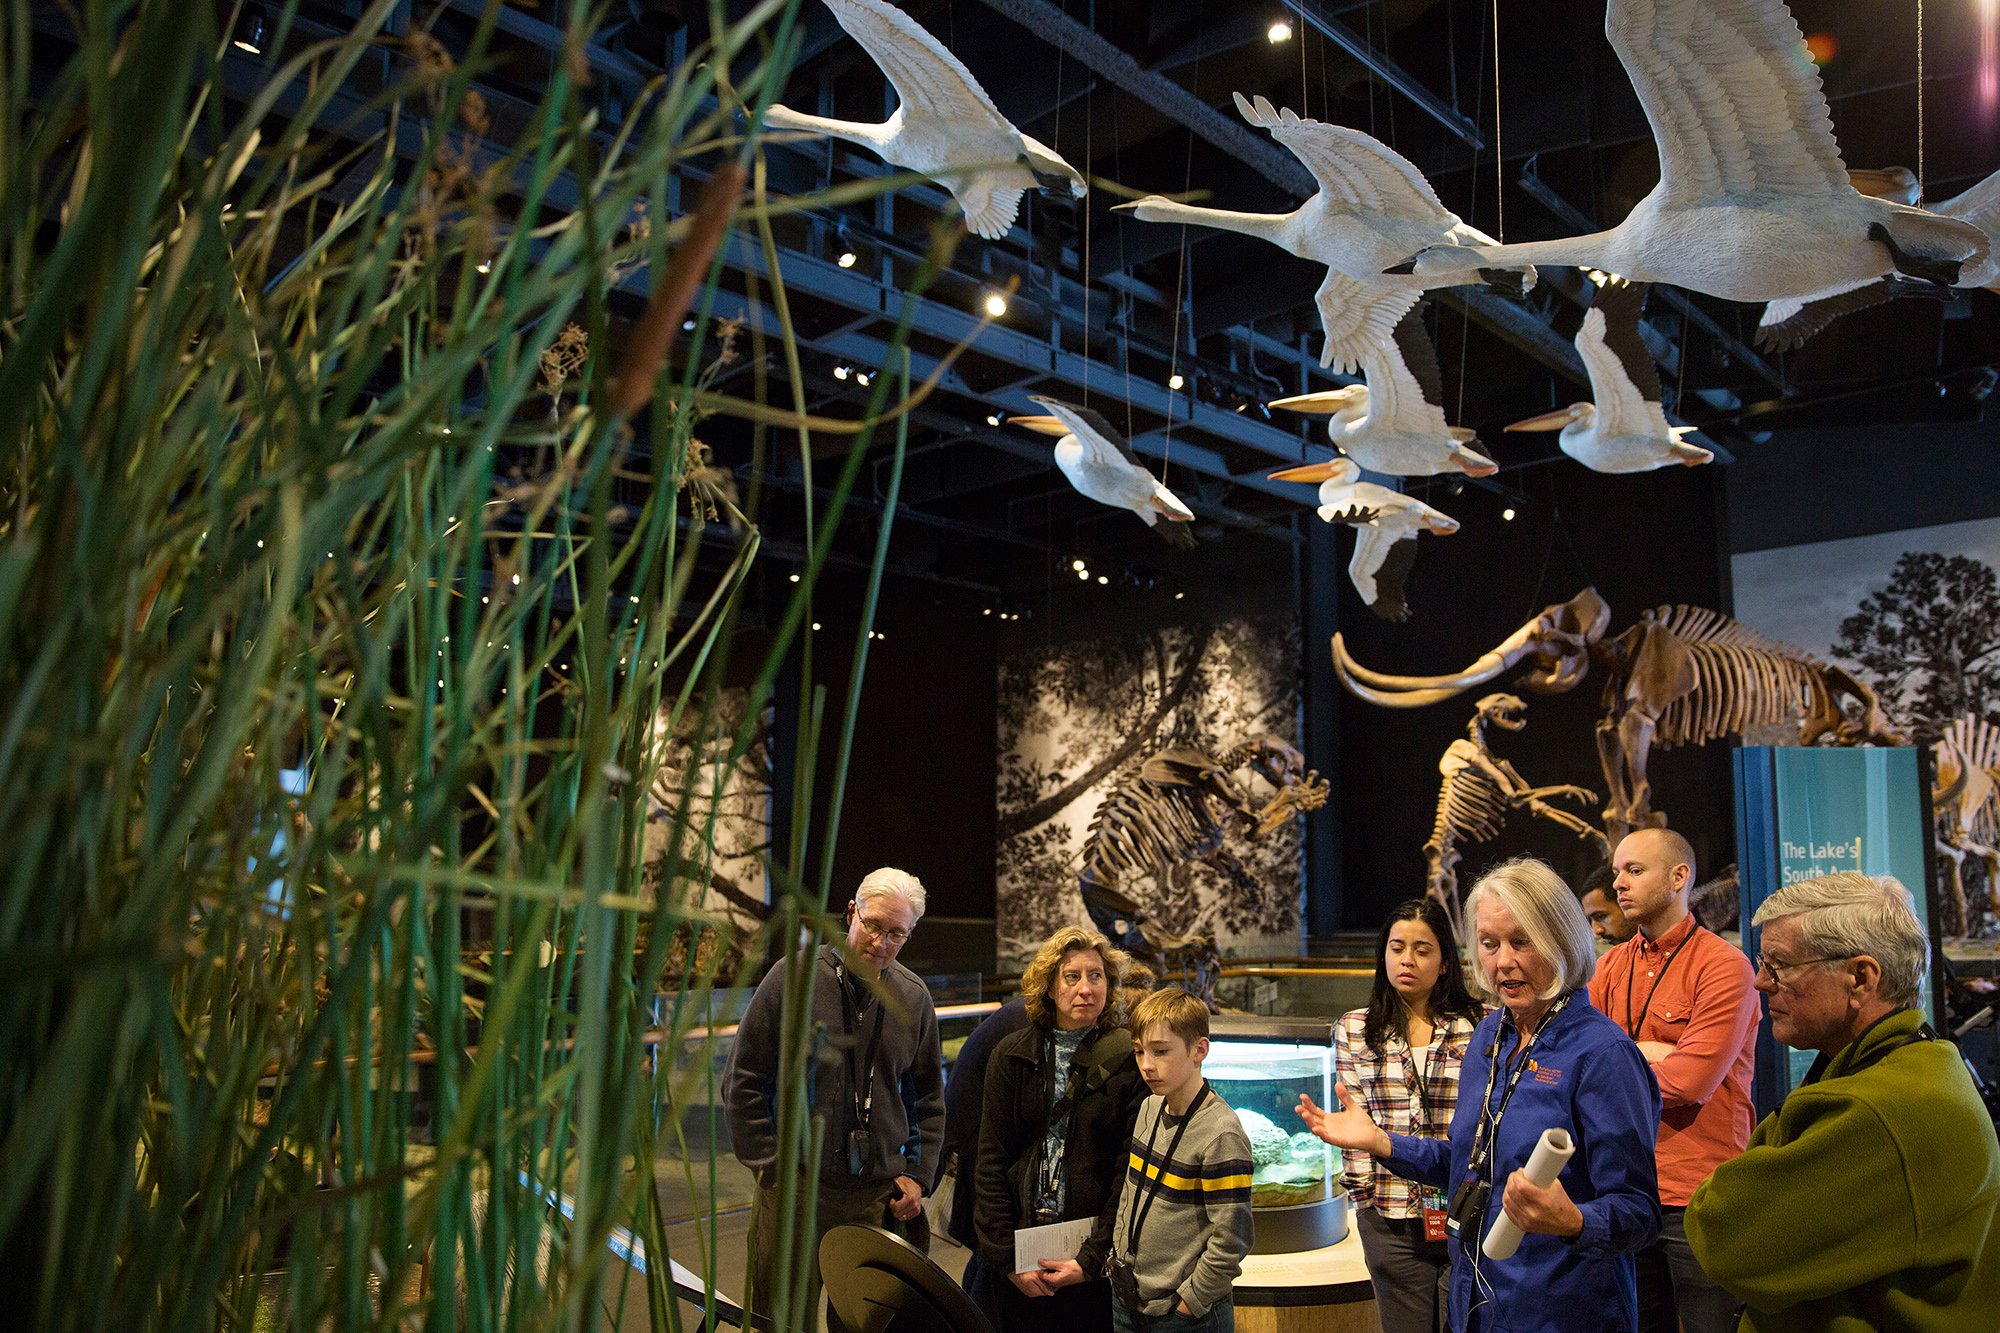 Come explore Utah's biomes in the Life Gallery at The Natural History Museum of Utah